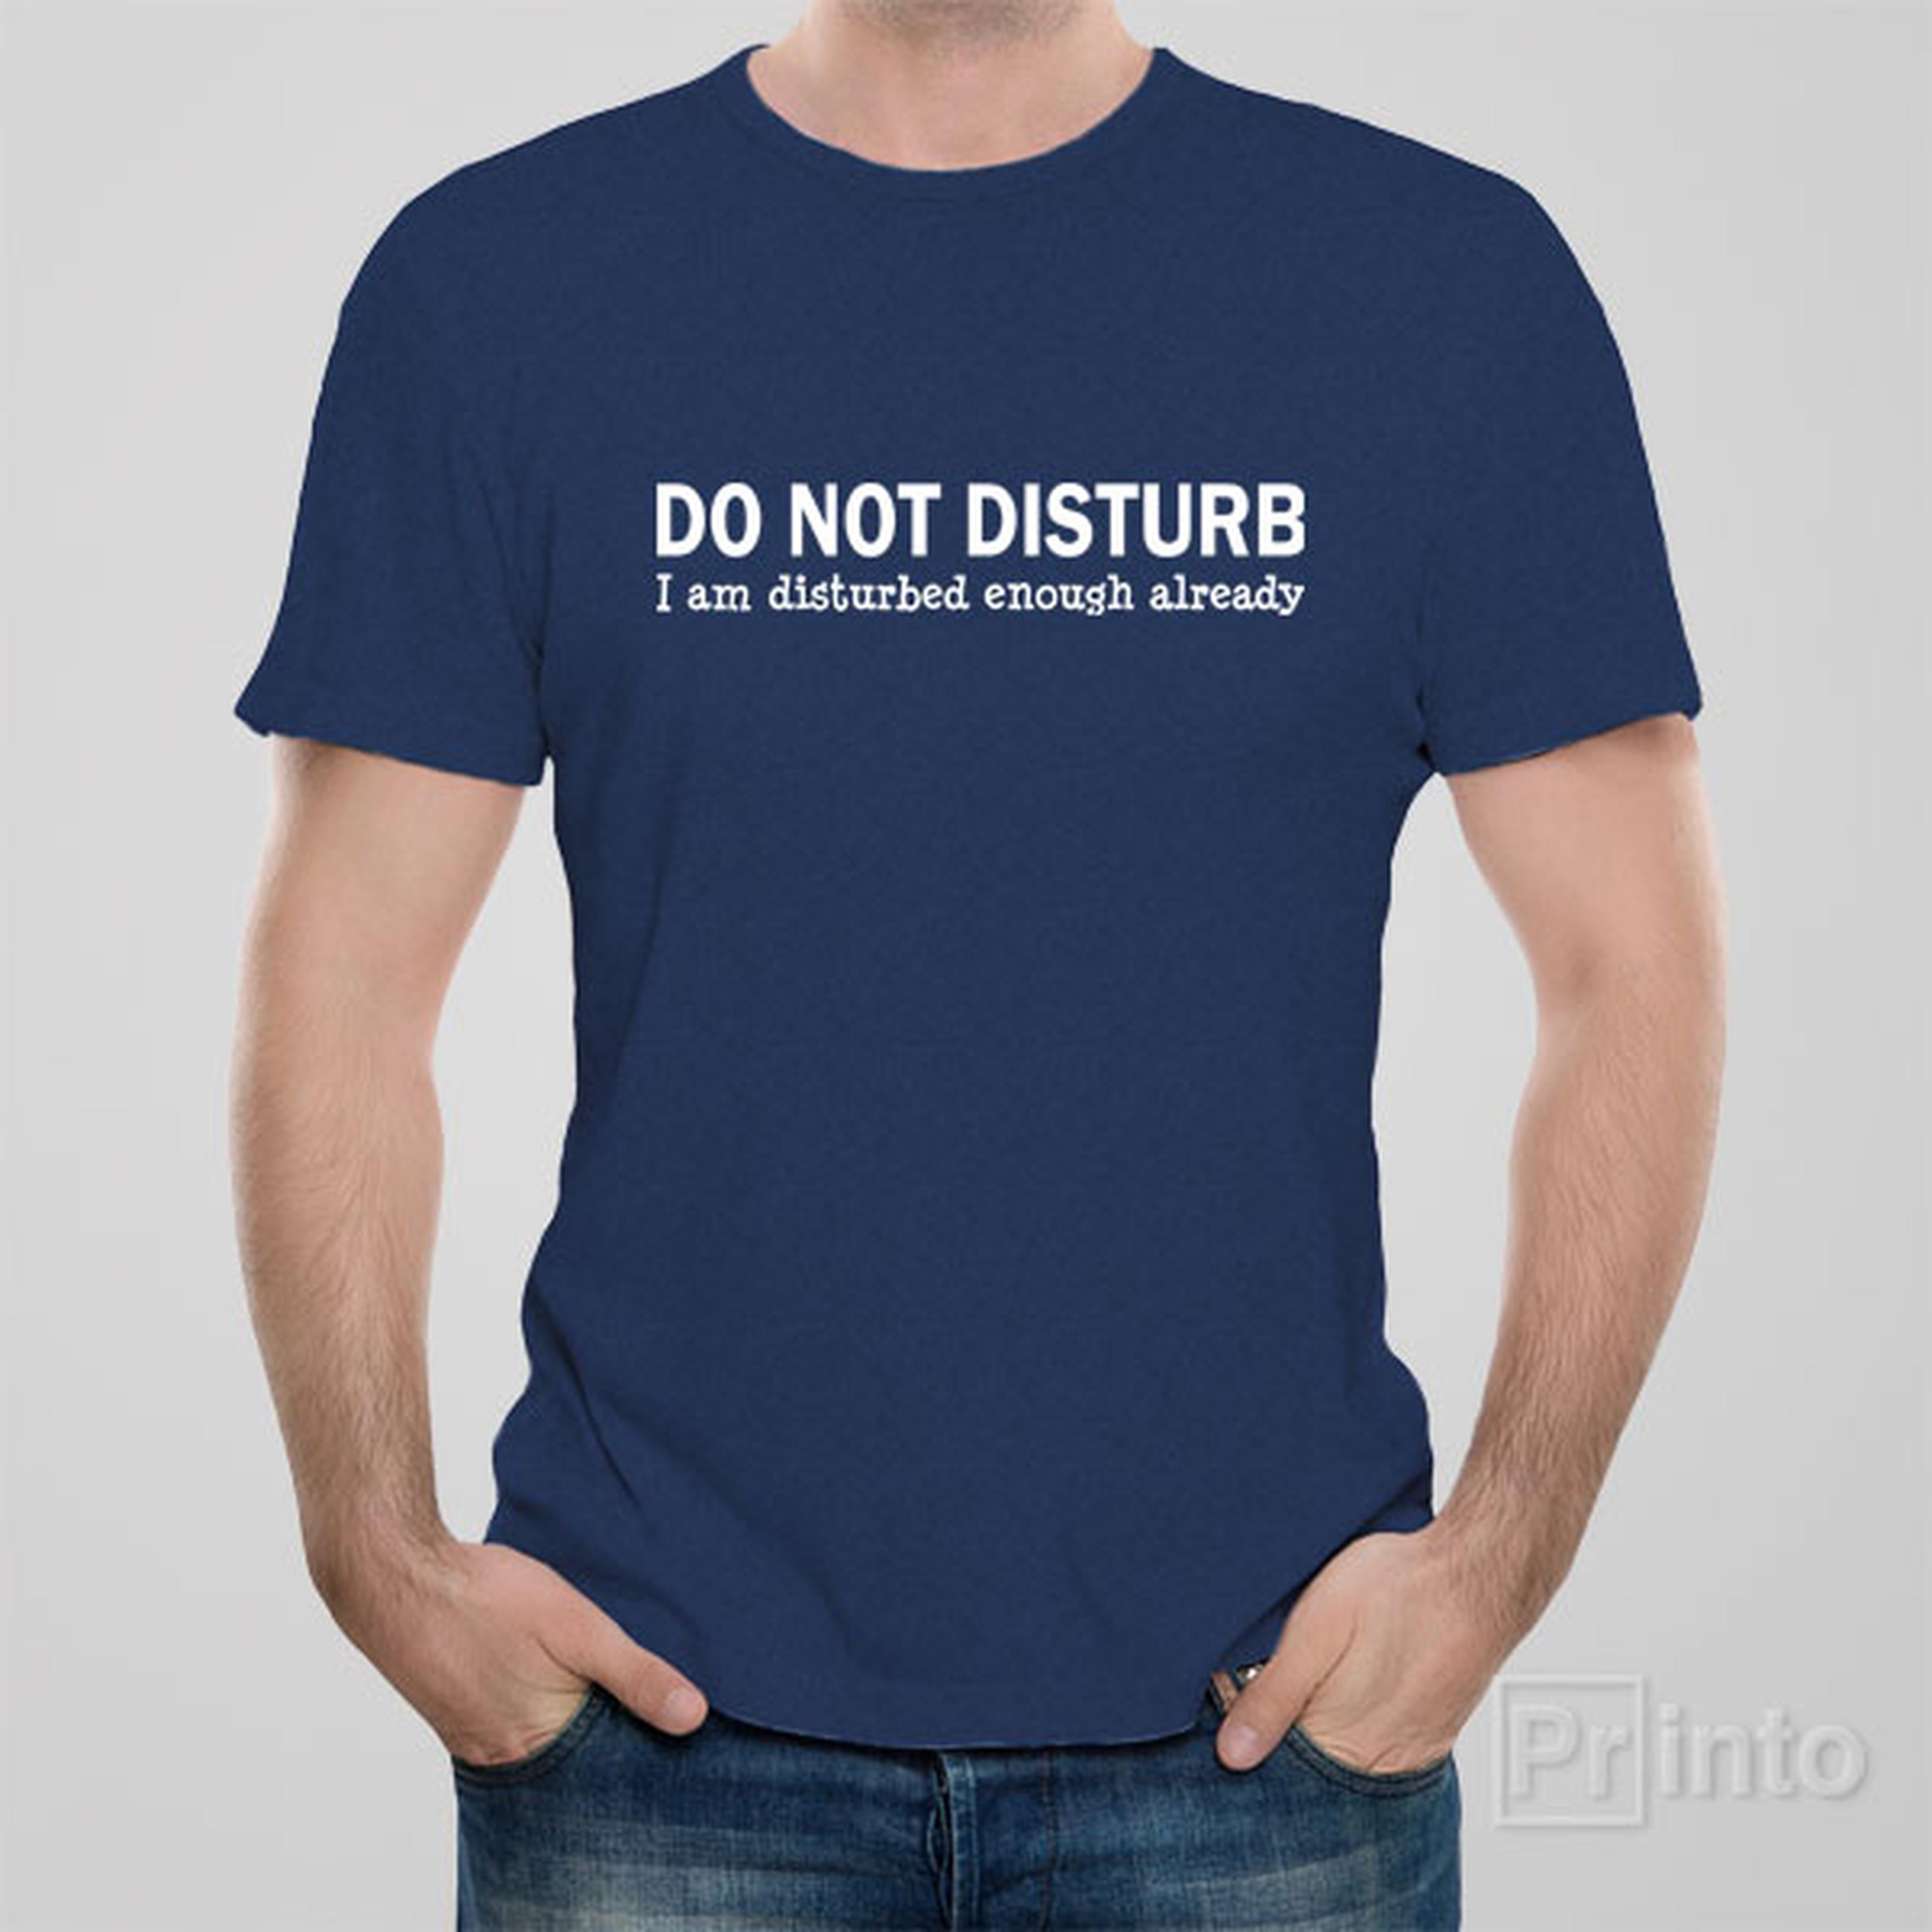 do-not-disturb-t-shirt